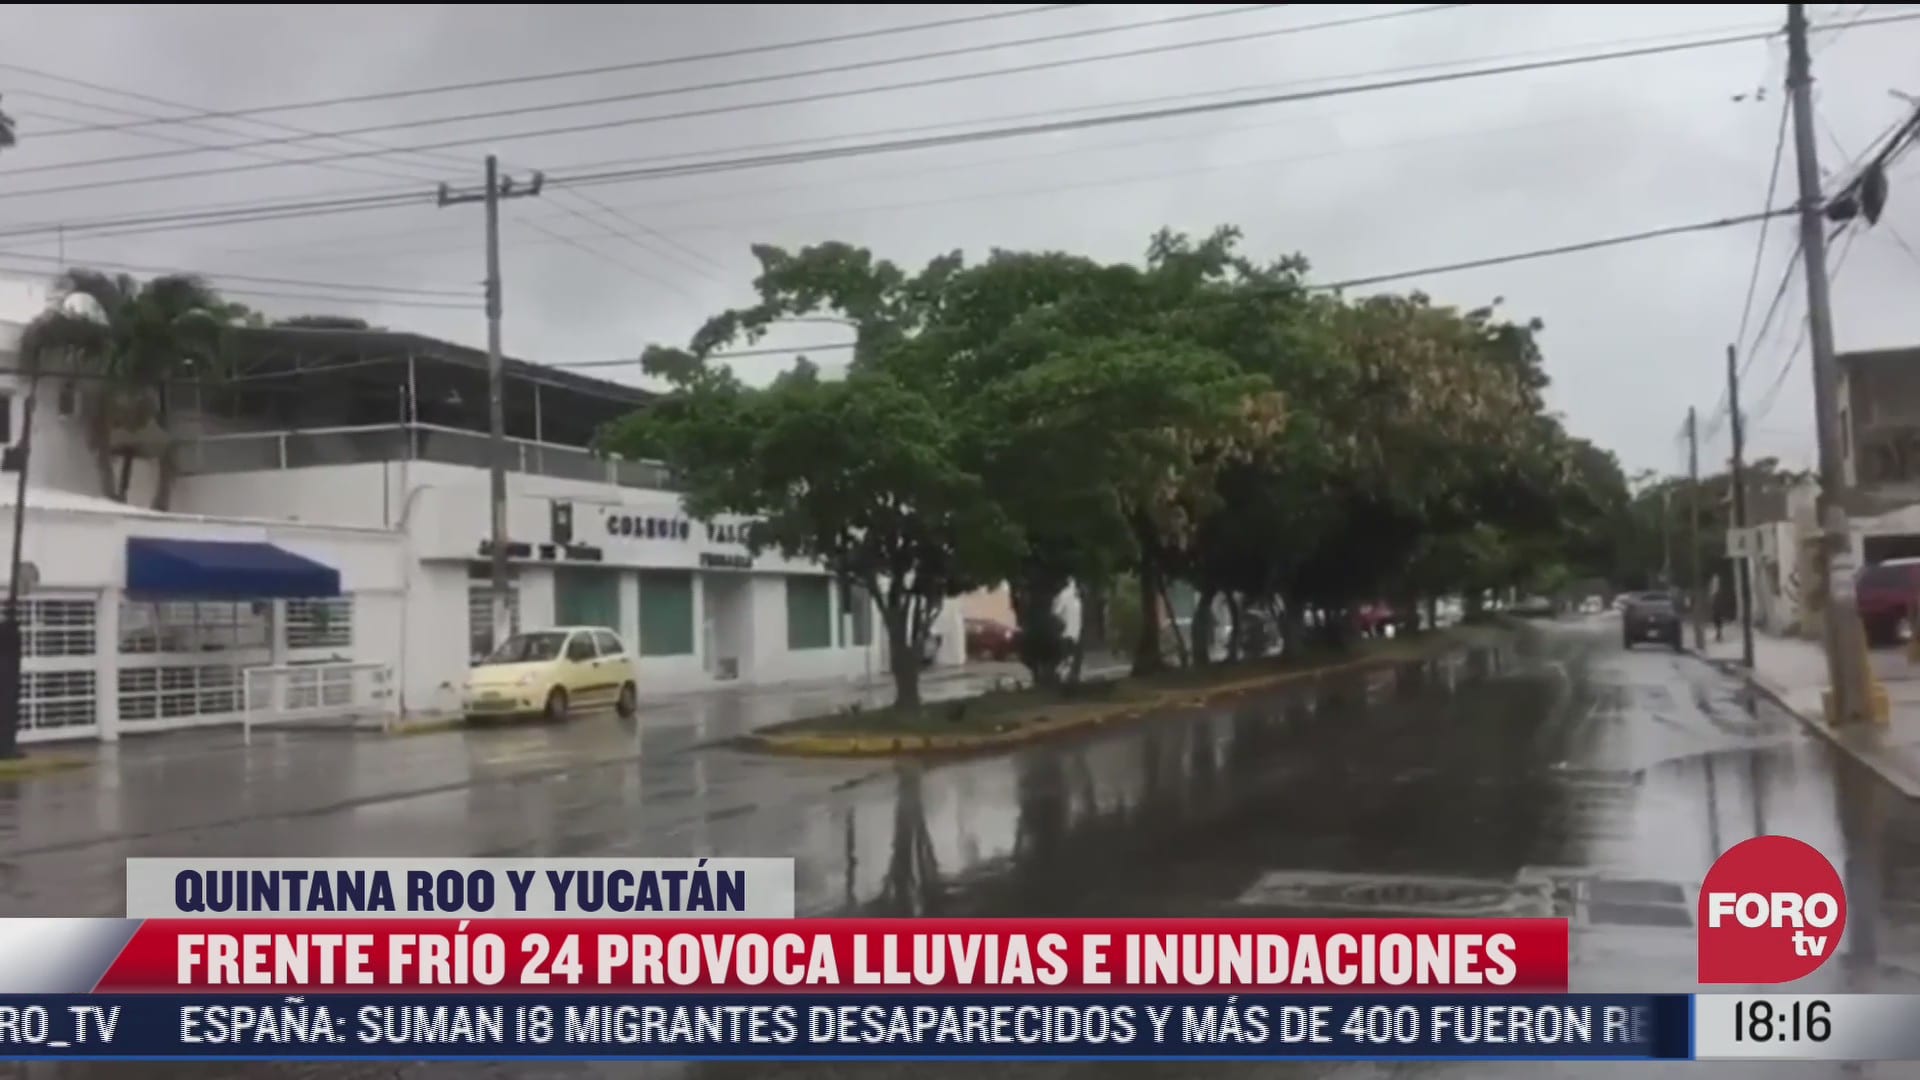 frente frio 24 provoca bajas temperaturas en la peninsula de yucatan